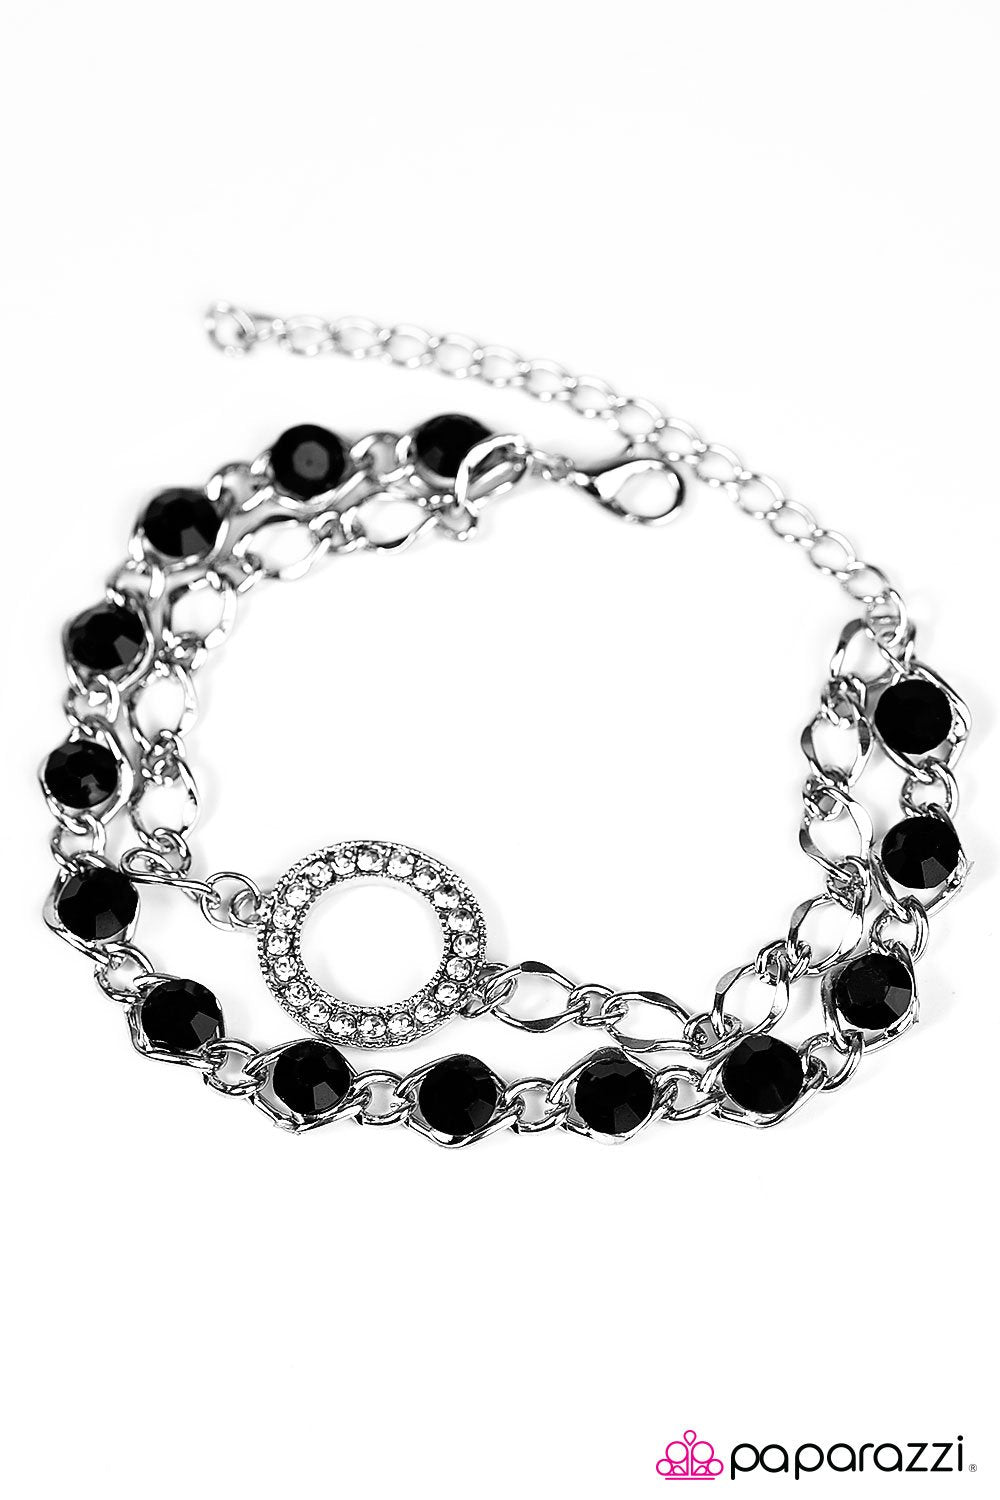 Everyday Shine Black Rhinestone Bracelet - Paparazzi Accessories-CarasShop.com - $5 Jewelry by Cara Jewels